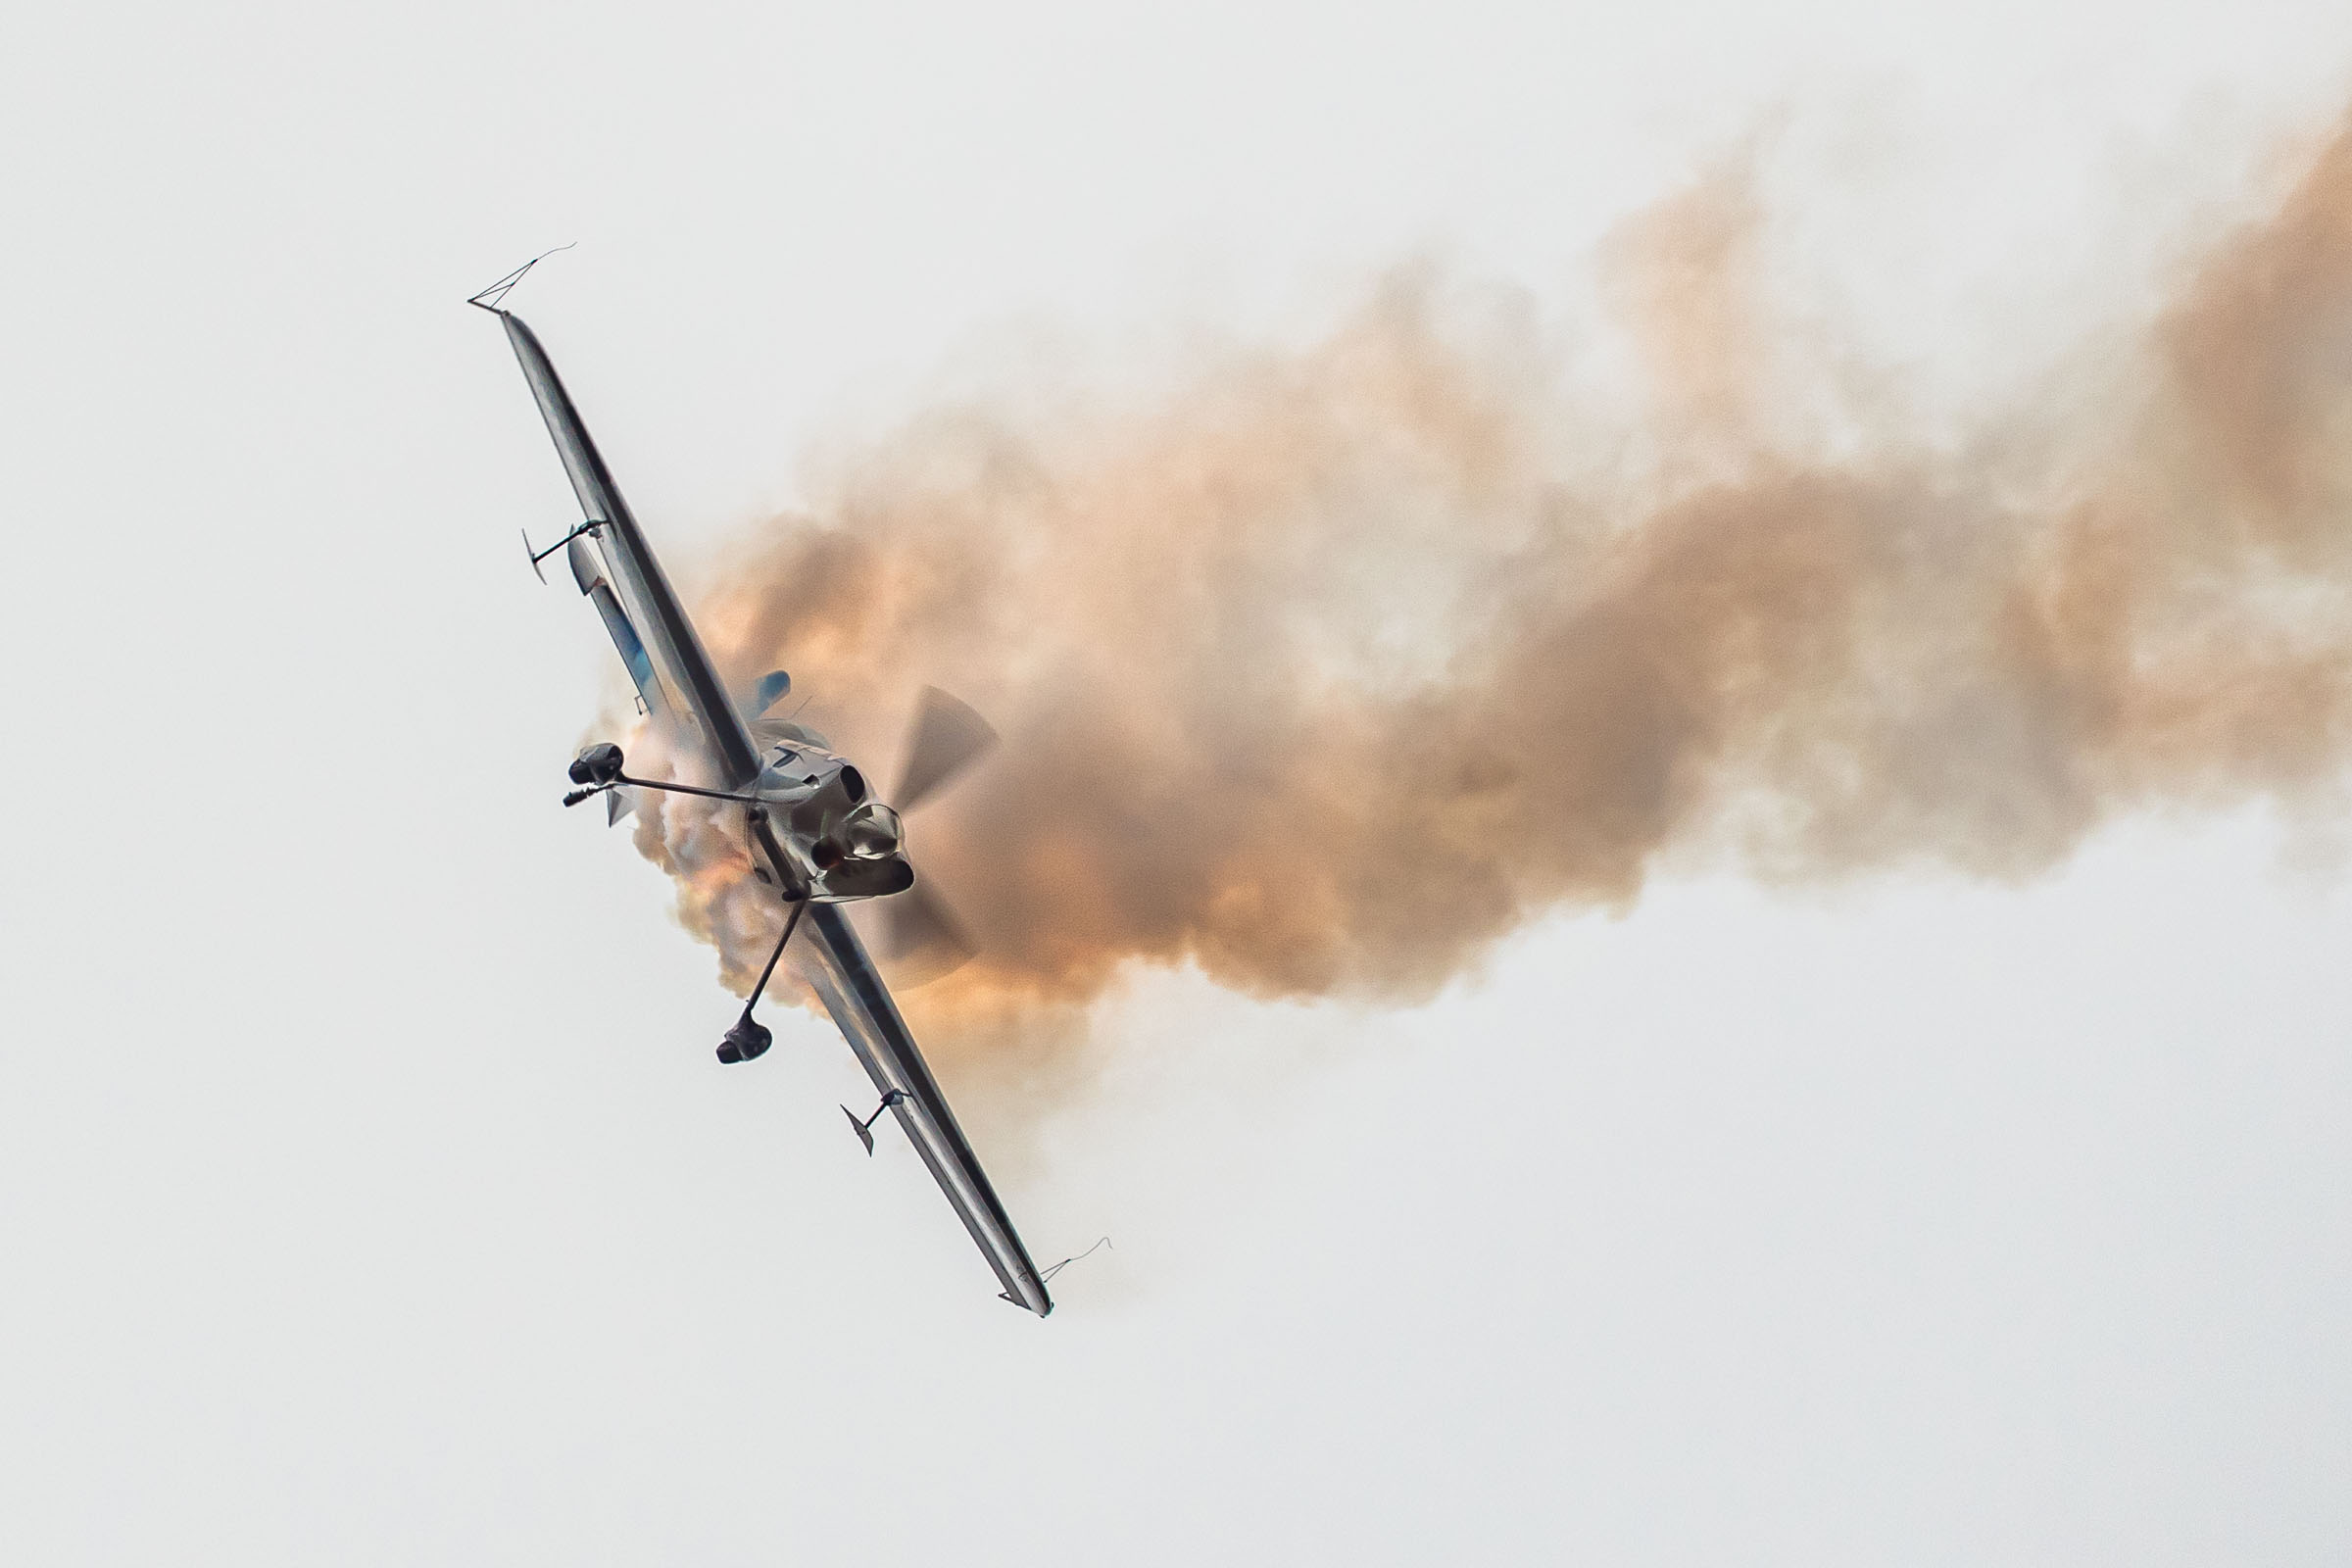 Samolot GB1 wykonujący podniebne akrobacje. Samolot wykonuje manewr skrętu, jest przechylony na bok, za samolotem ciągnie się smuga dymu.